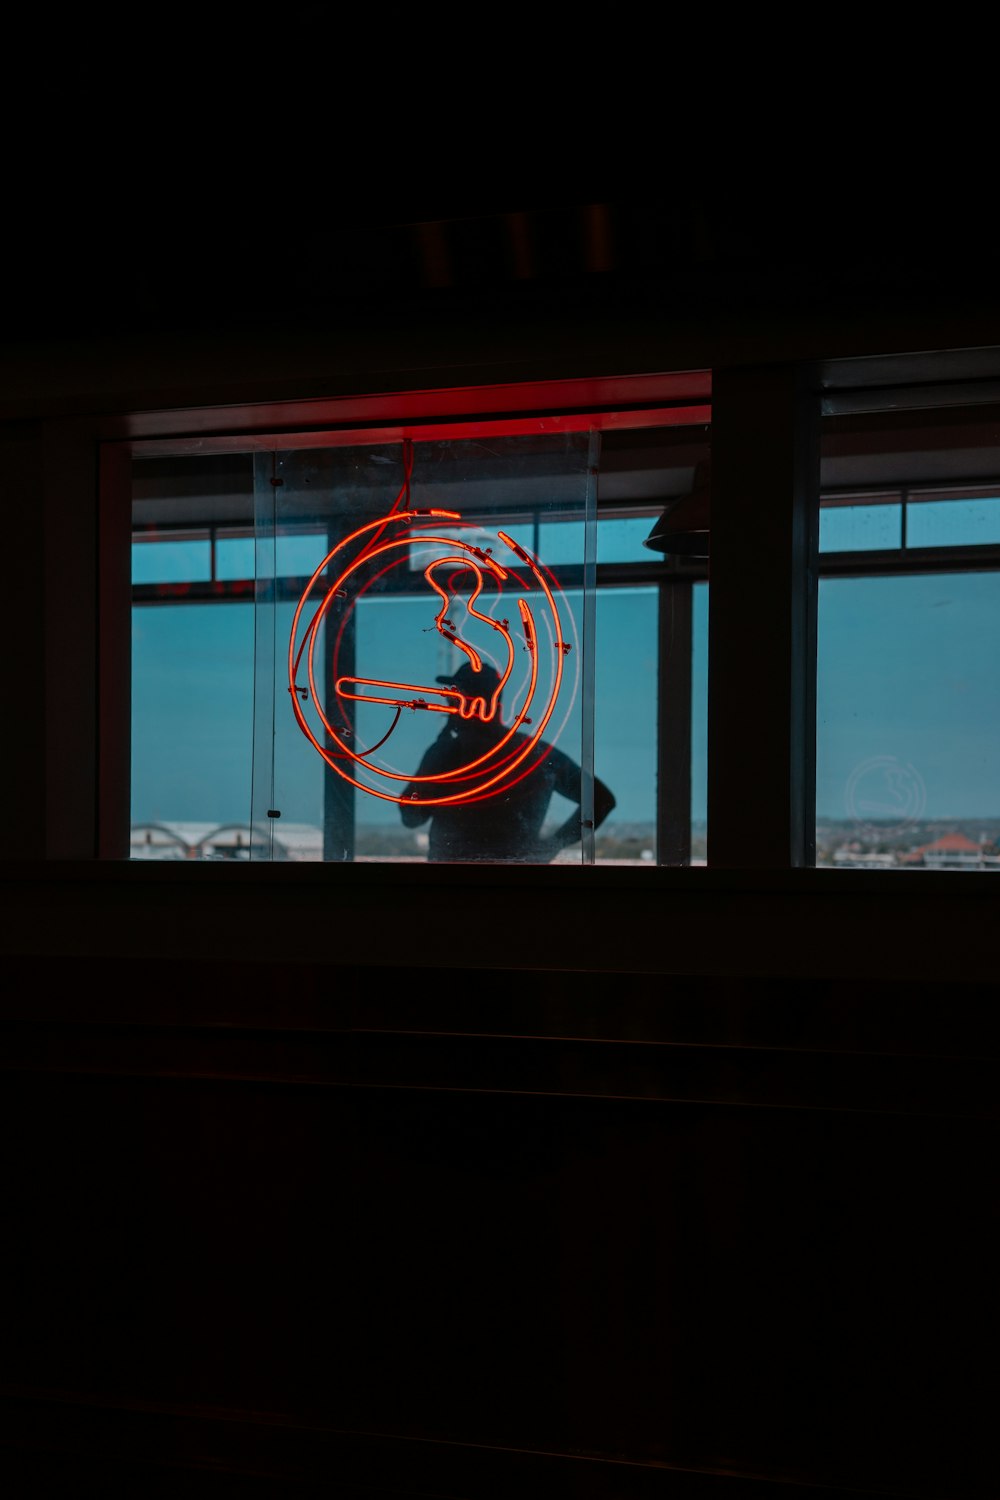 Eine Leuchtreklame vor einem Fenster in einem dunklen Raum